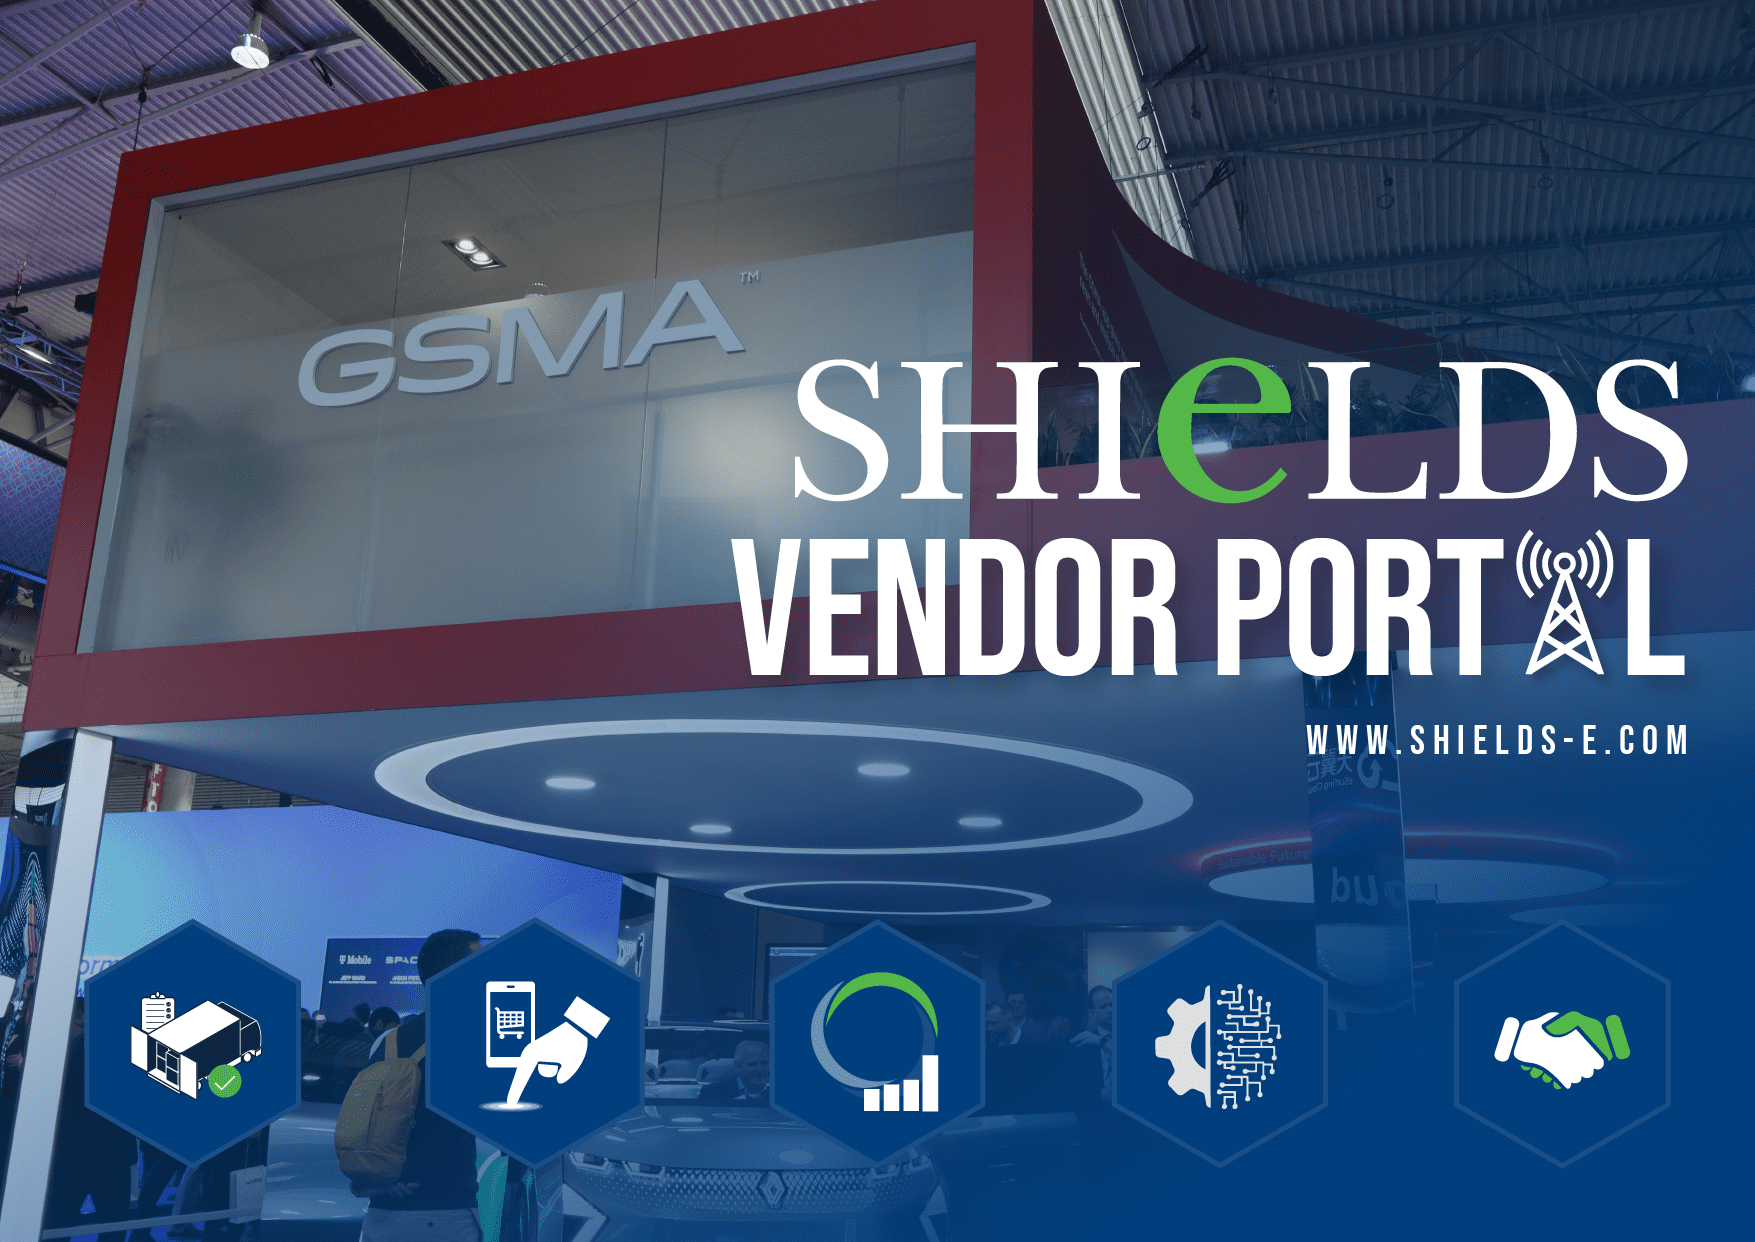 Shields Vendor Portal GSMA Blog Header Graphic